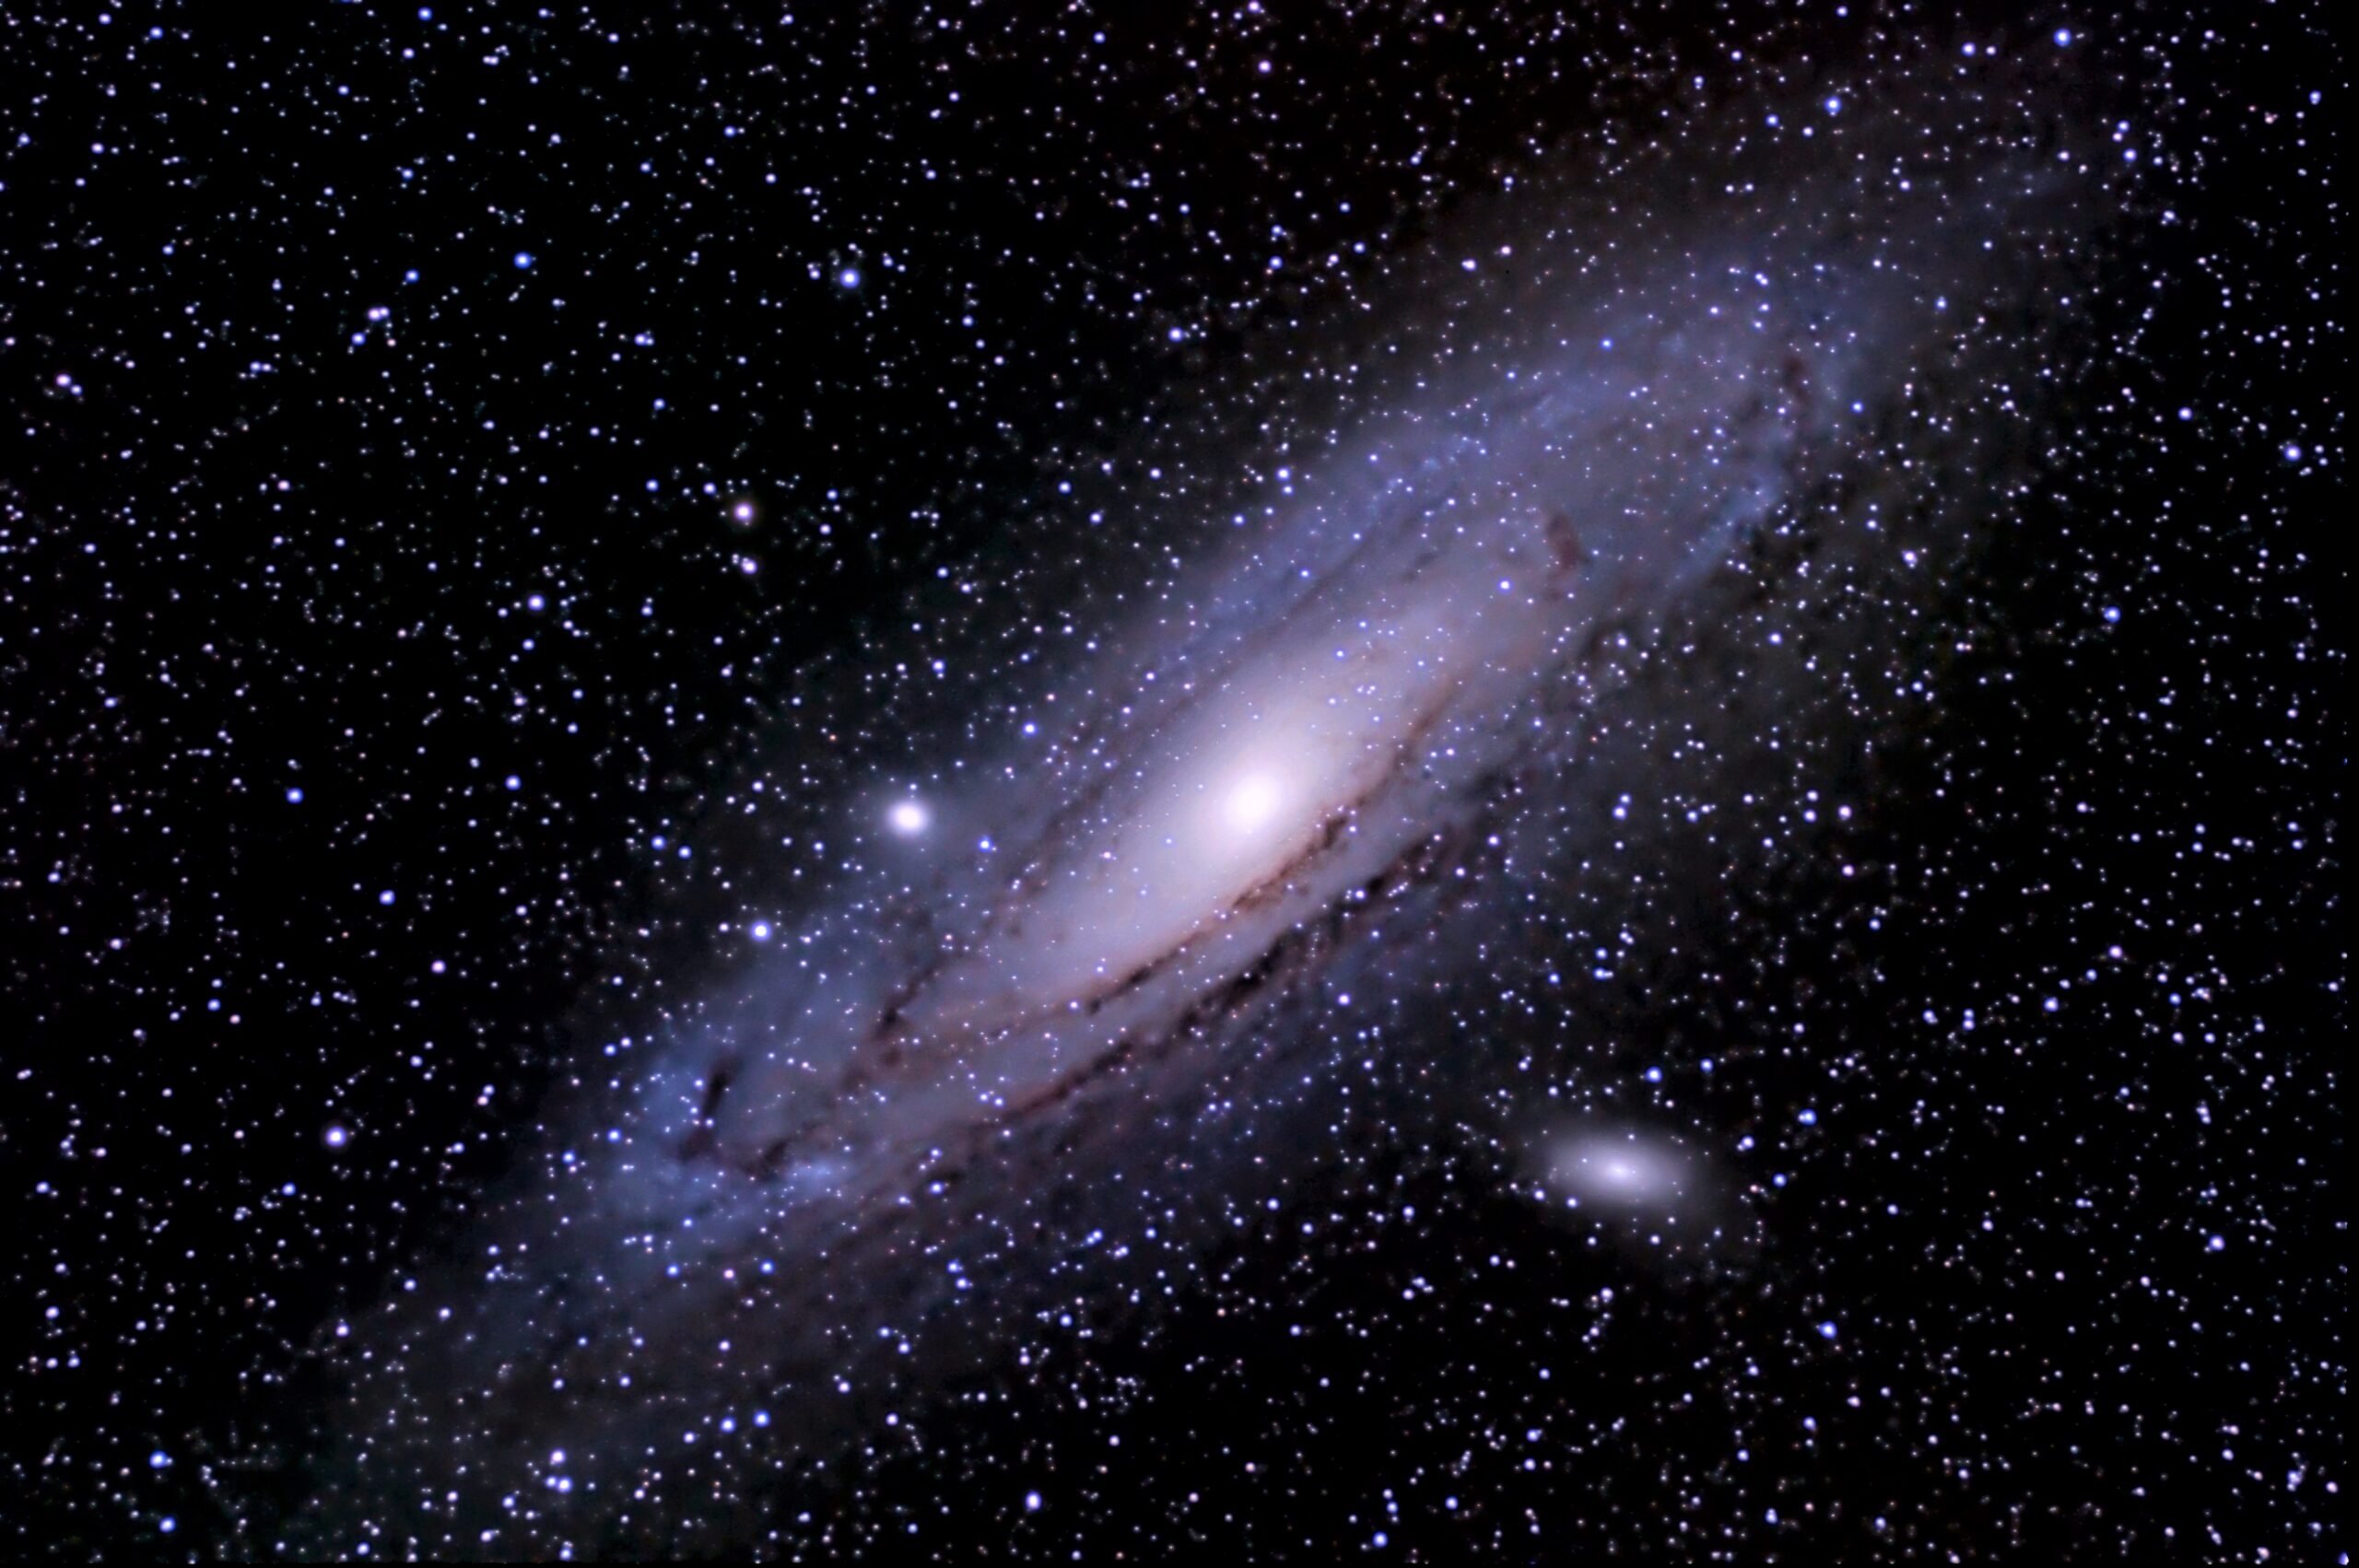 M31 – Galassia di Andromeda